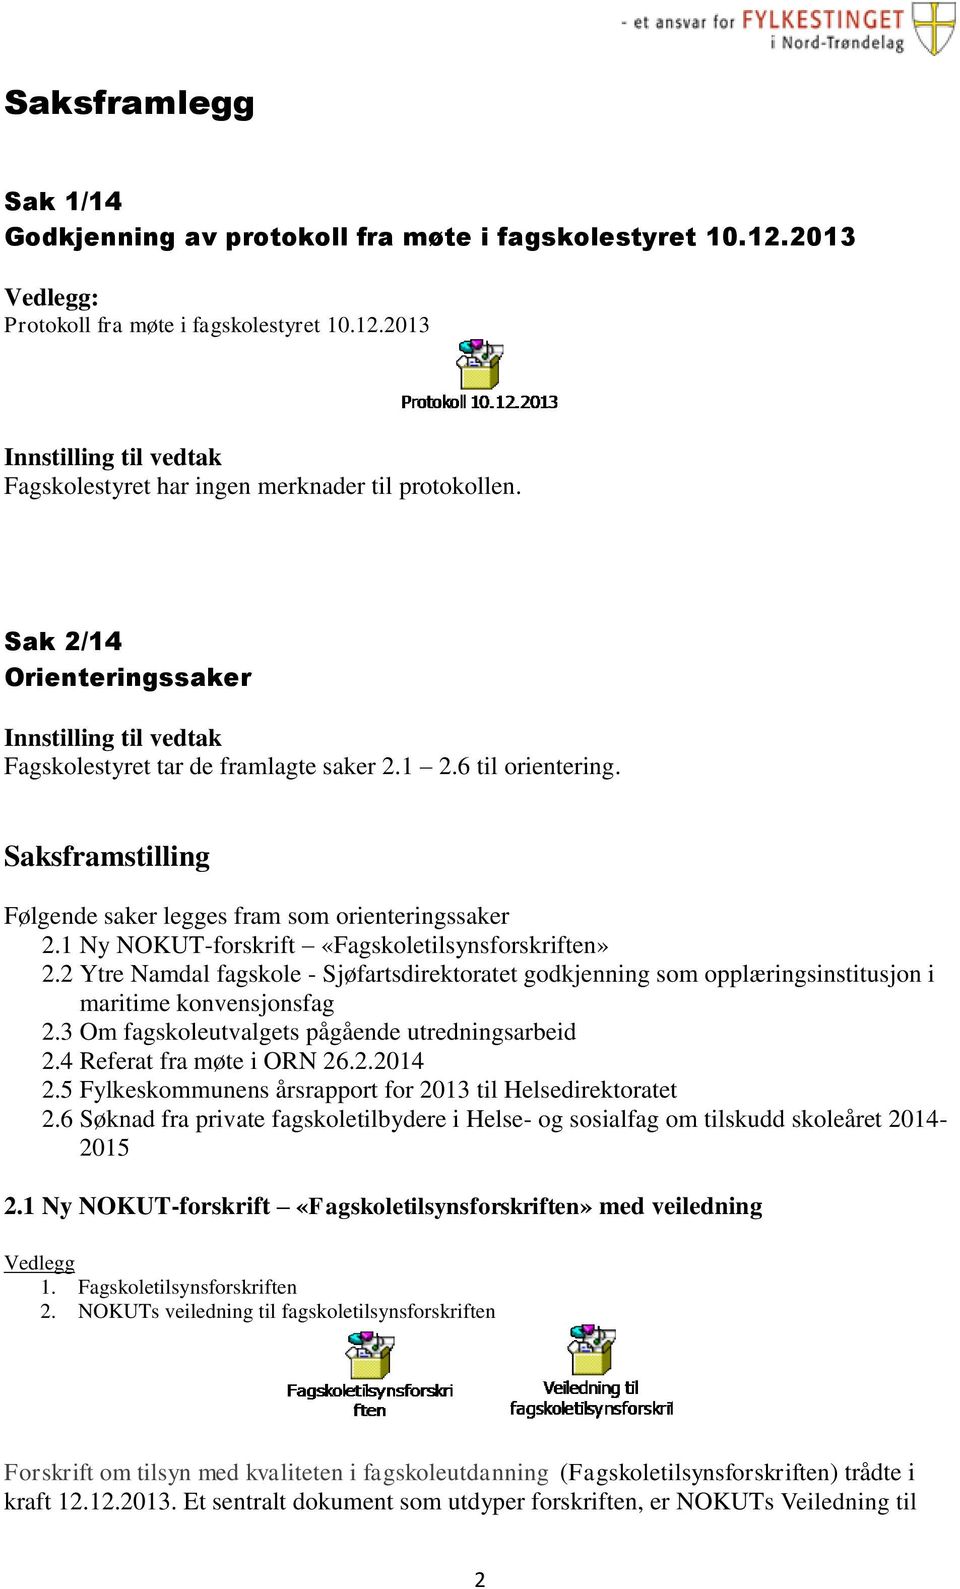 1 Ny NOKUT-forskrift «Fagskoletilsynsforskriften» 2.2 Ytre Namdal fagskole - Sjøfartsdirektoratet godkjenning som opplæringsinstitusjon i maritime konvensjonsfag 2.